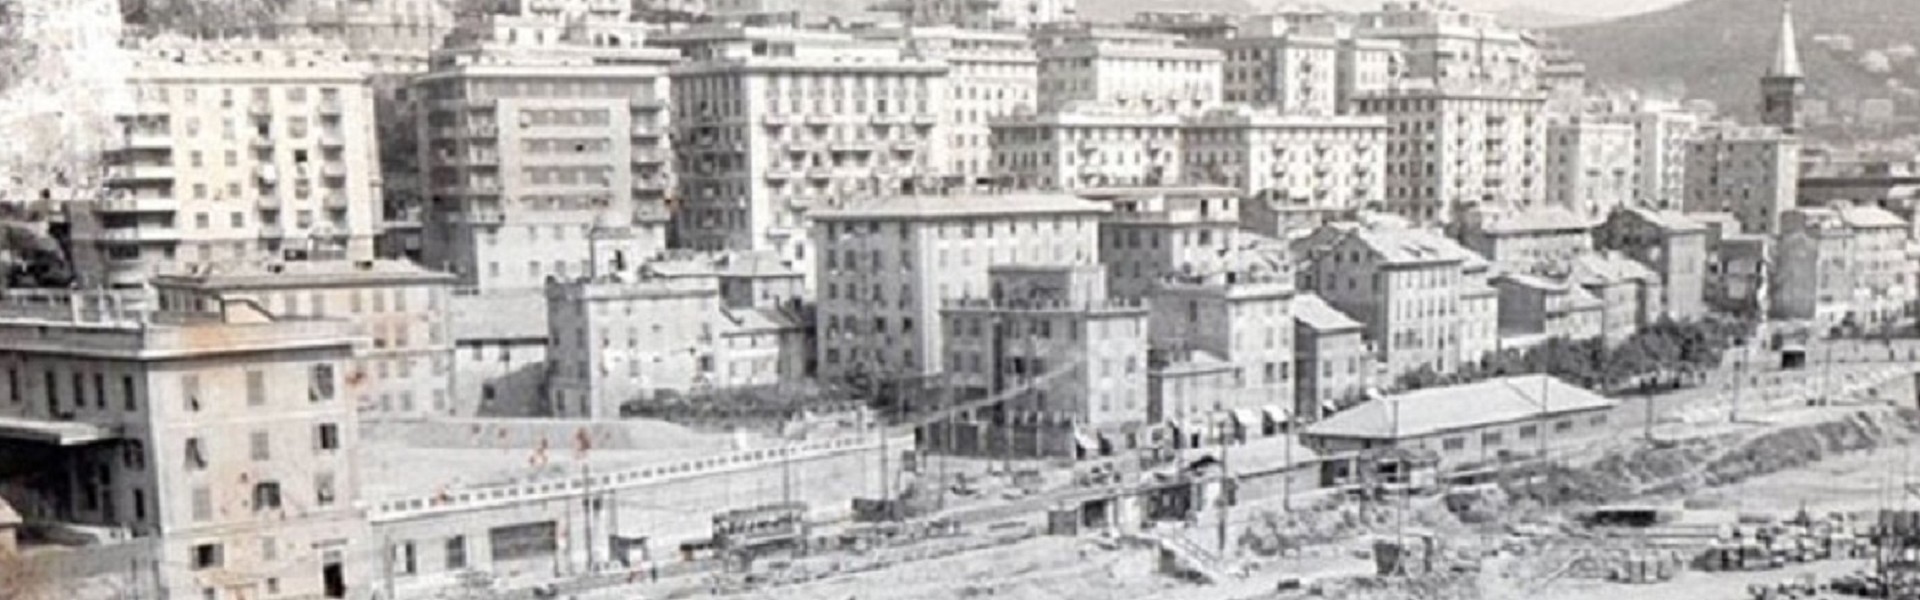 Vendita Cantine Genova | Dismissioni Immobiliari Banche | Vendita Cantina Genova Foce